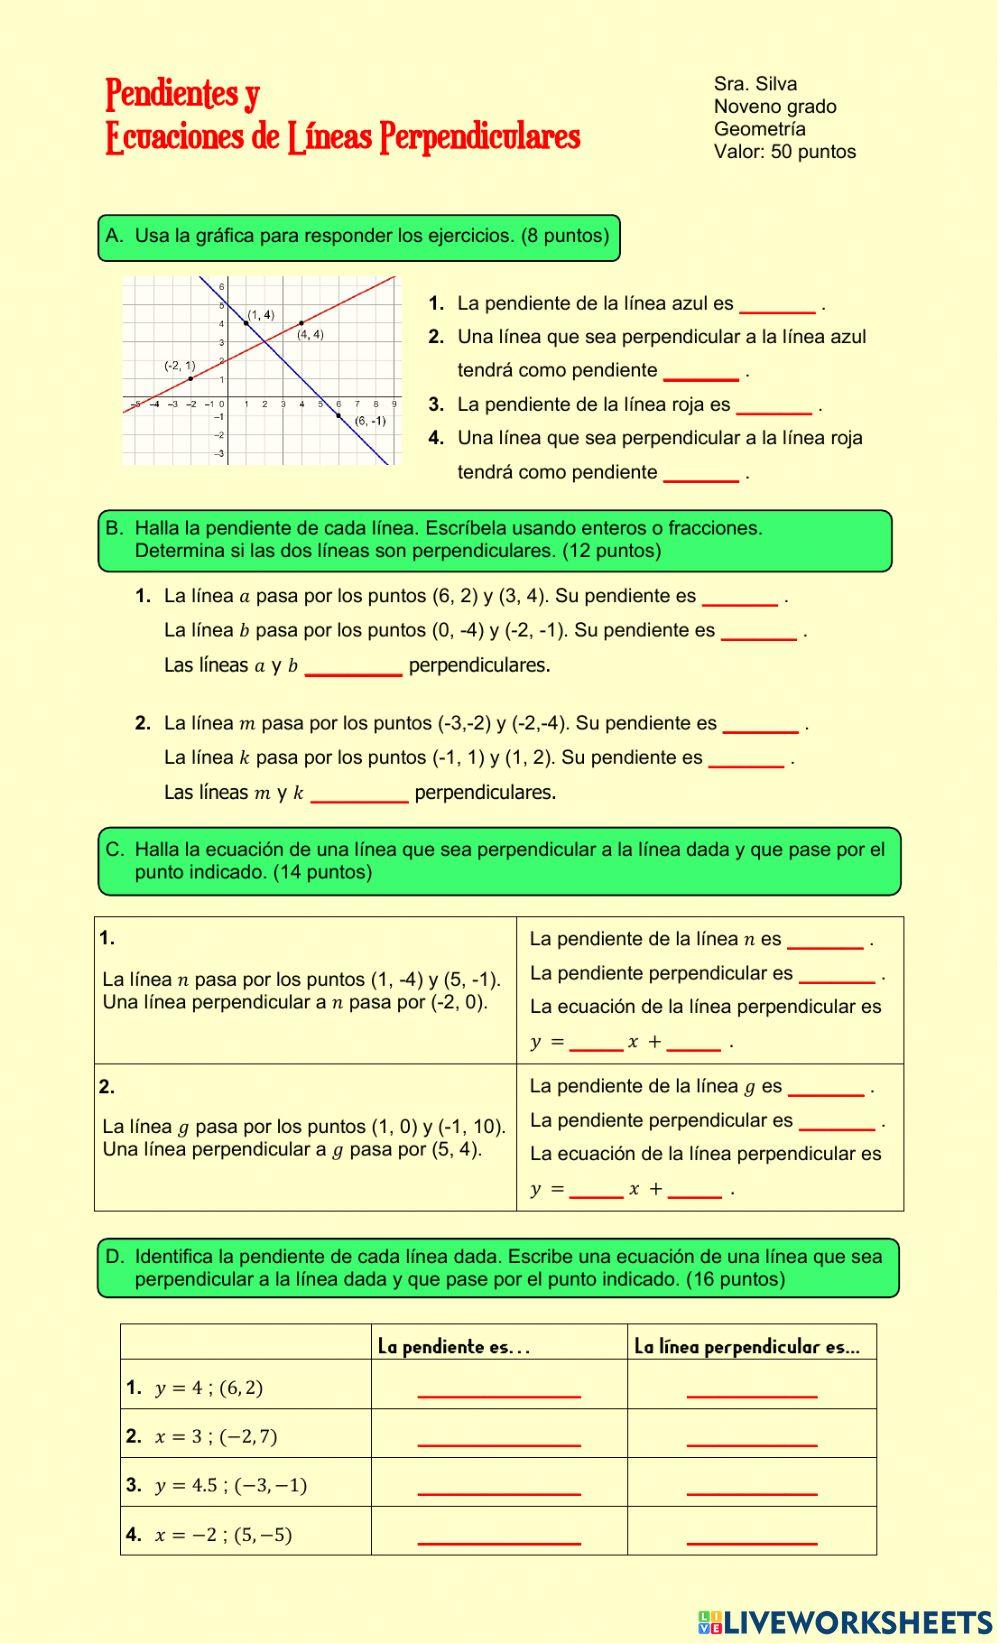 Pendientes y Ecuaciones de Lineas Perpendiculares